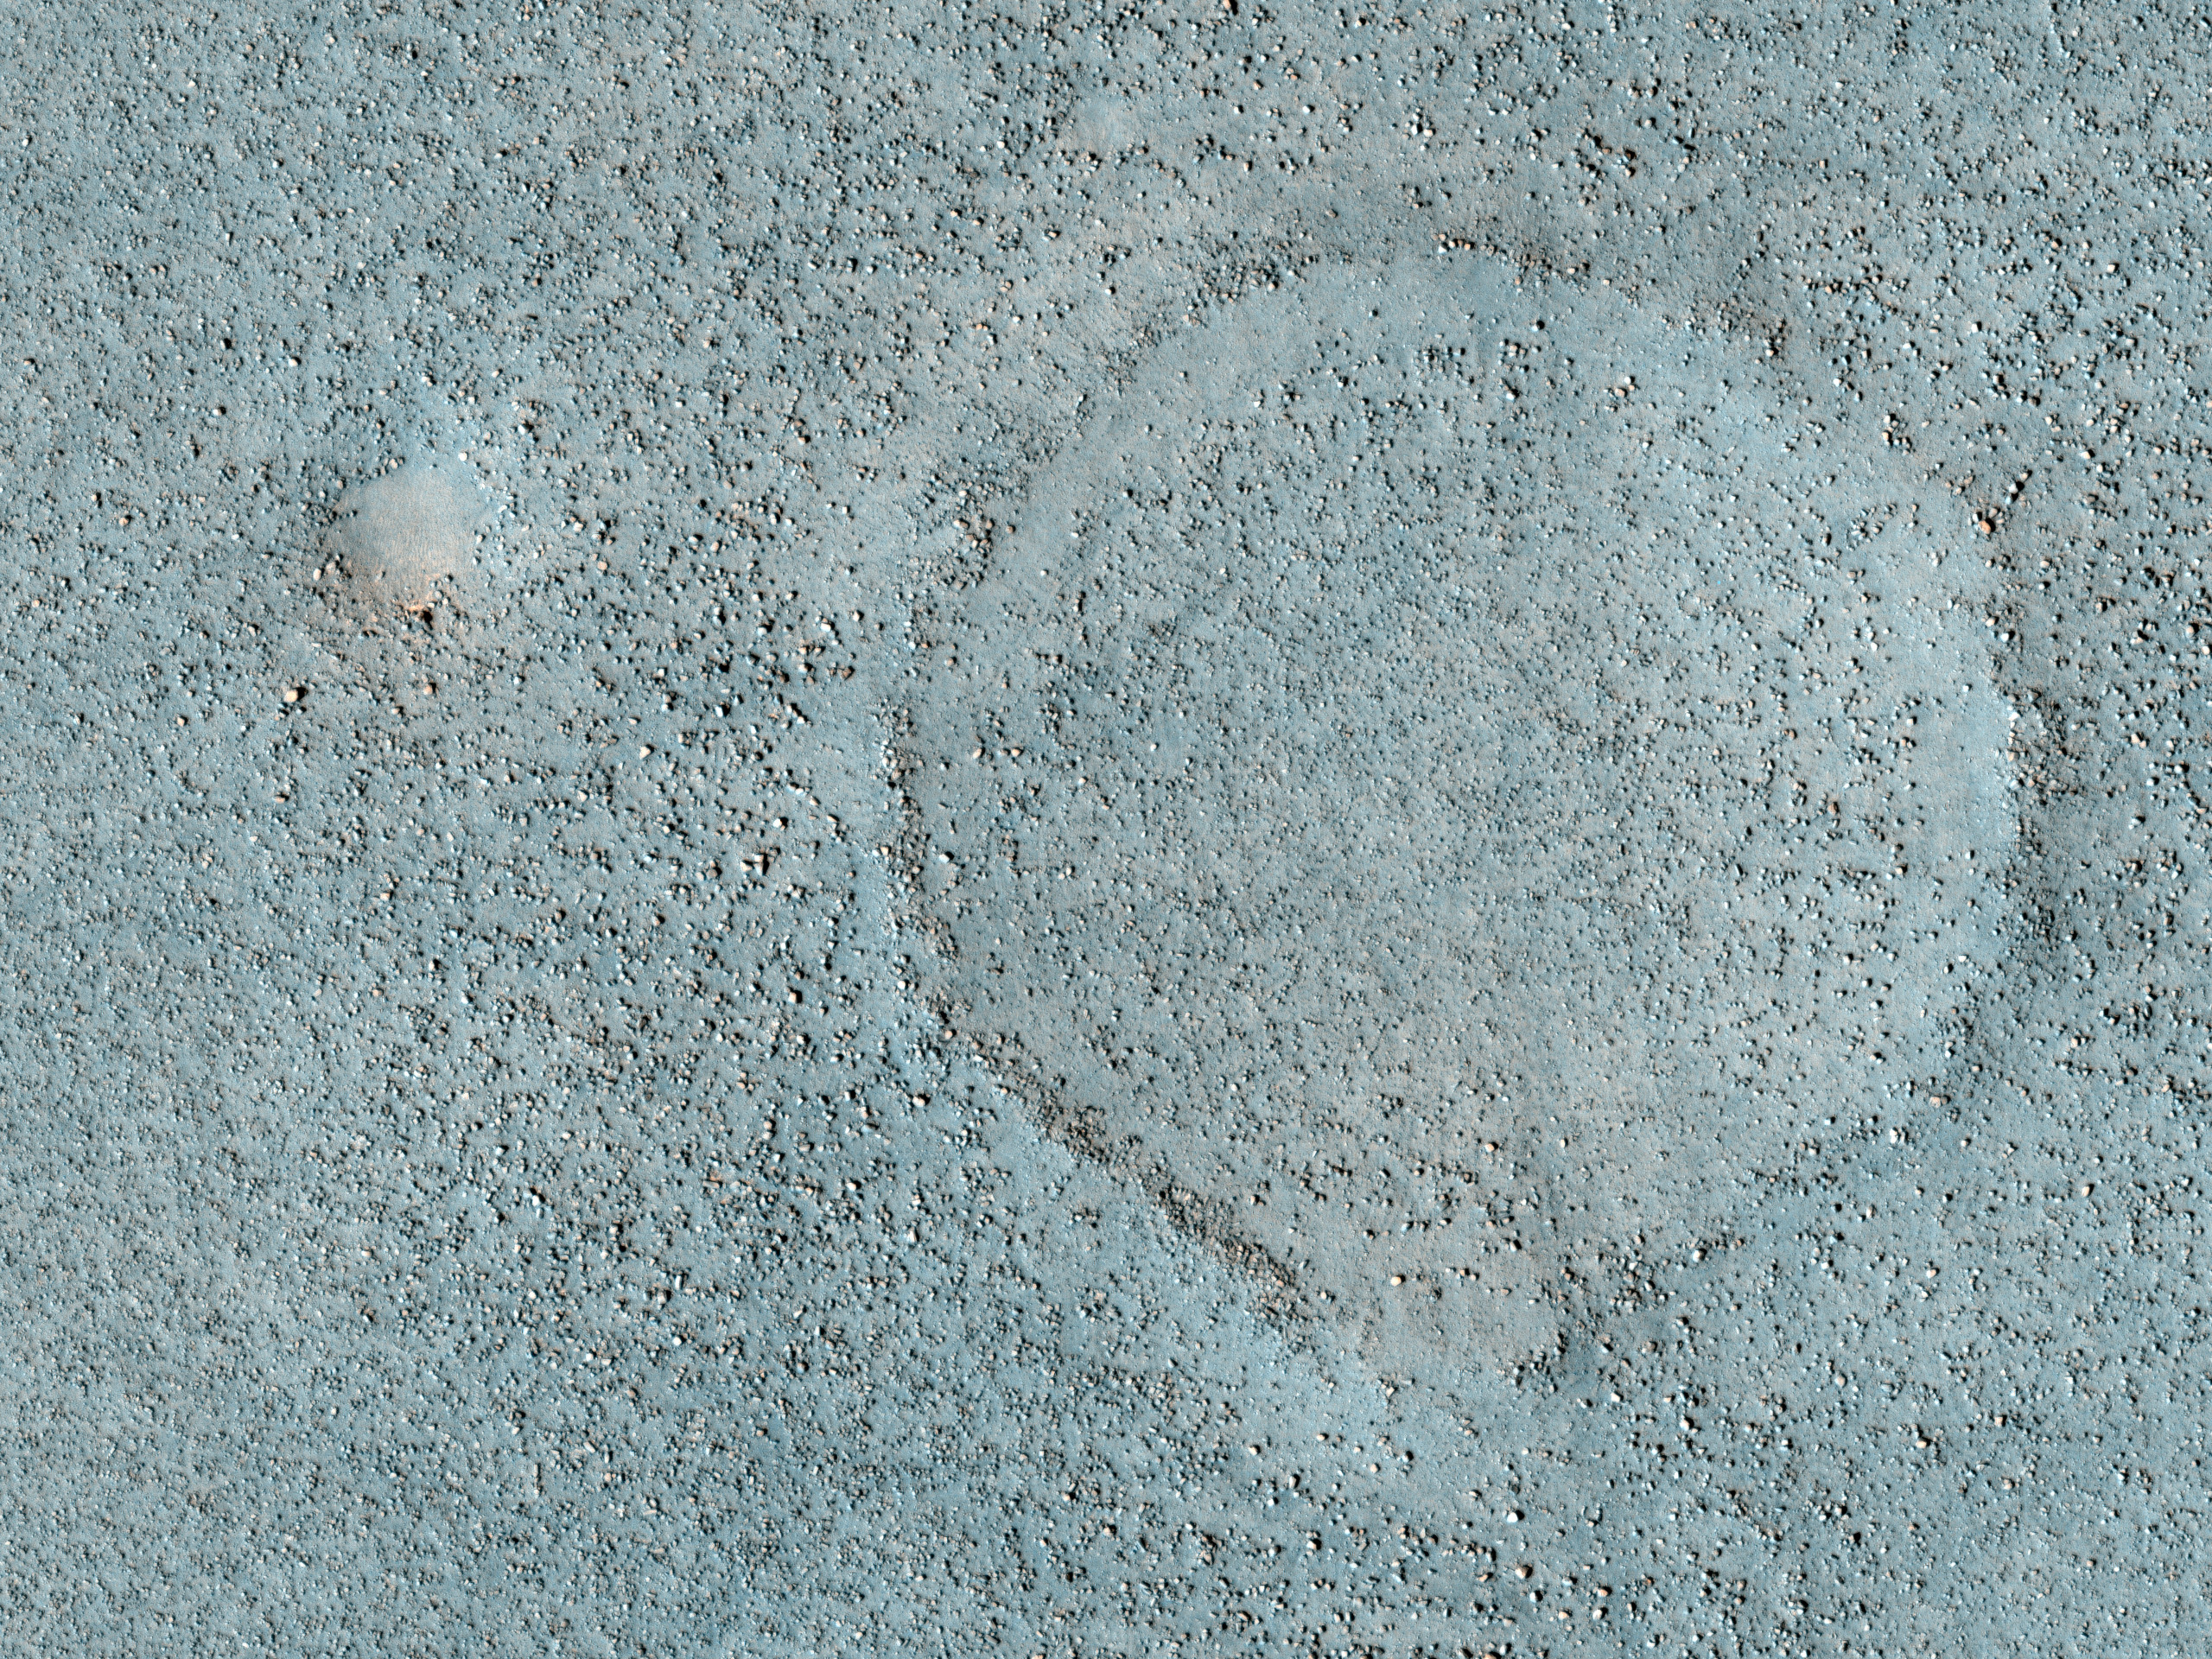 Llanura con rocas esparcidas en la zona norte de Utopia Planitia